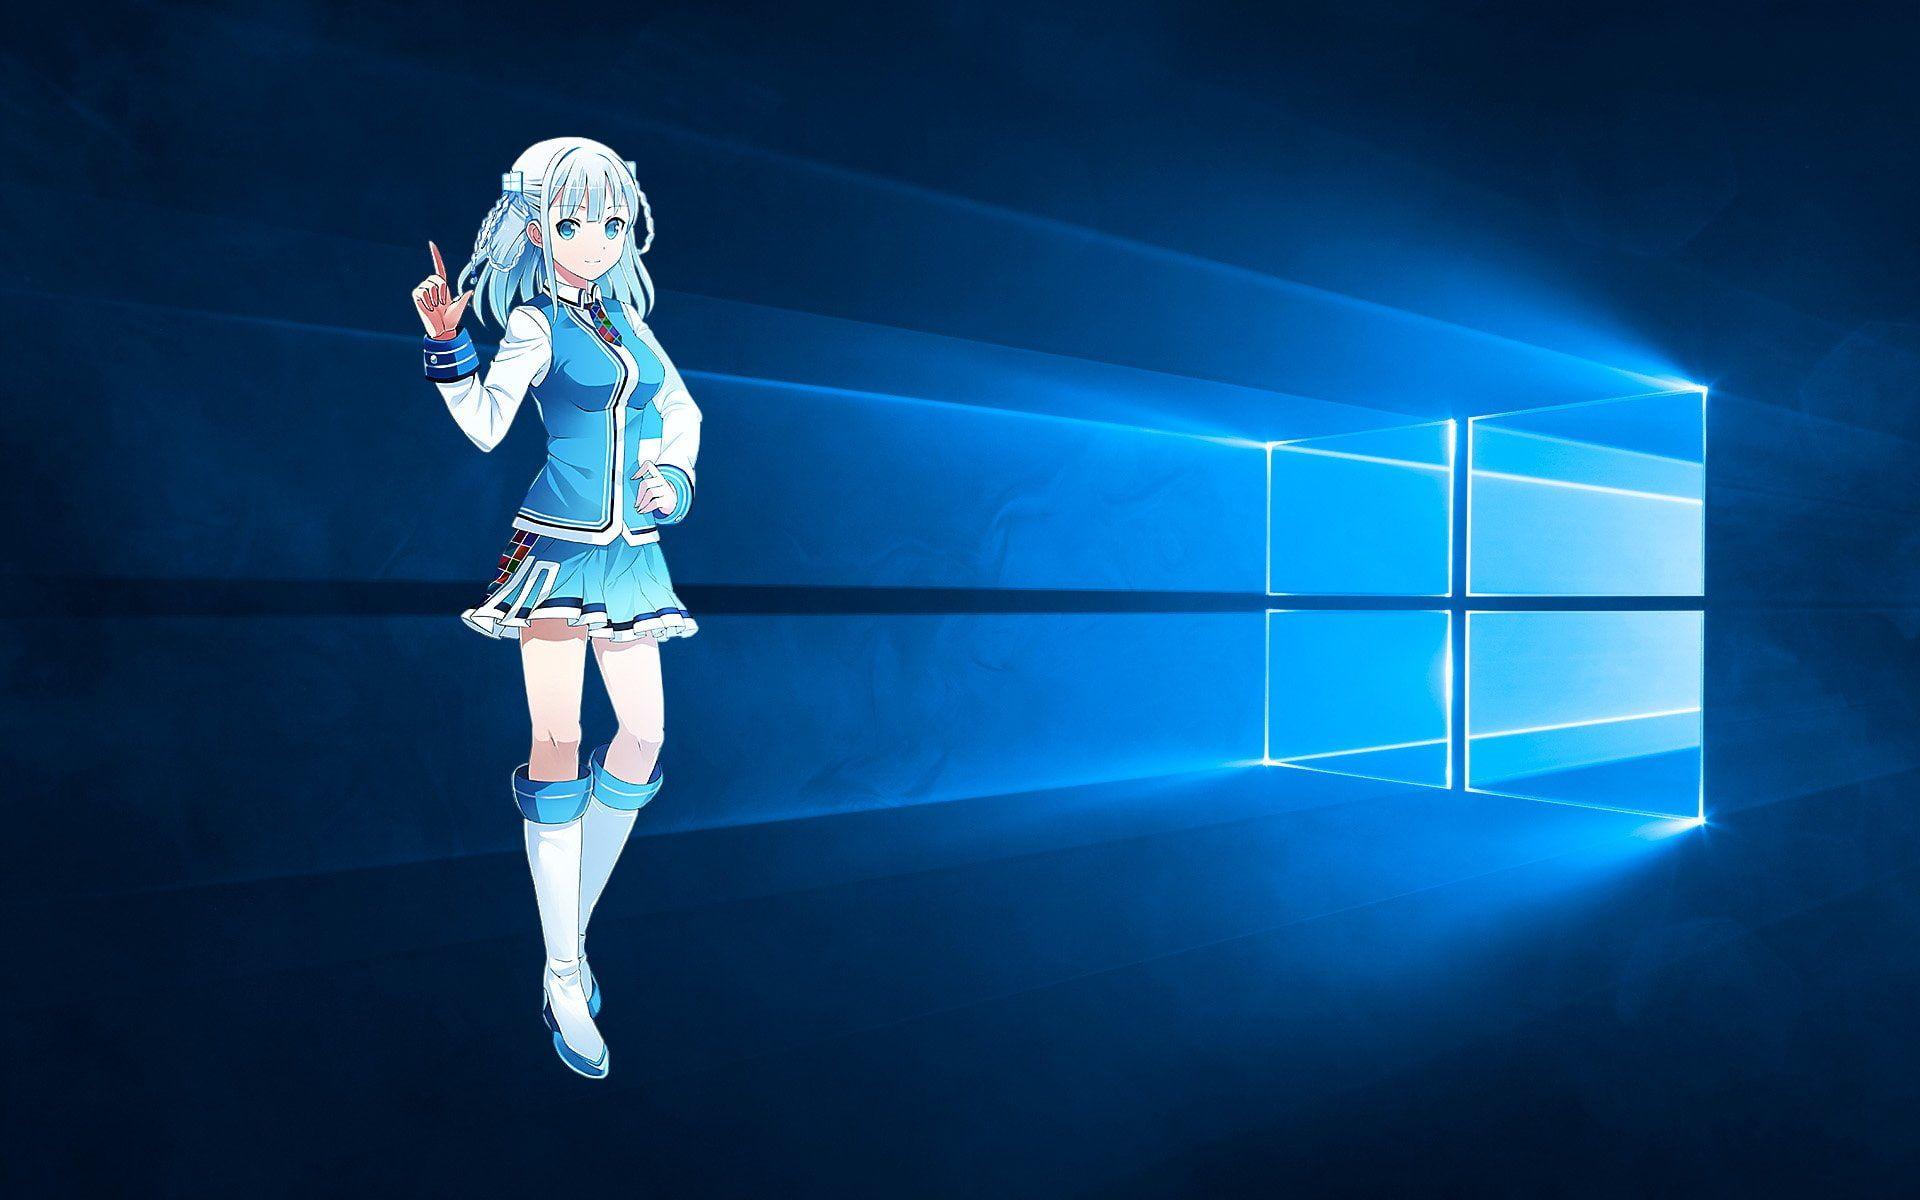 Bạn yêu thích Anime và sử dụng Windows 10? Hãy cập nhật ngay một số hình nền Anime phù hợp với sở thích của bạn với giao diện Windows 10 rực rỡ và đầy màu sắc.